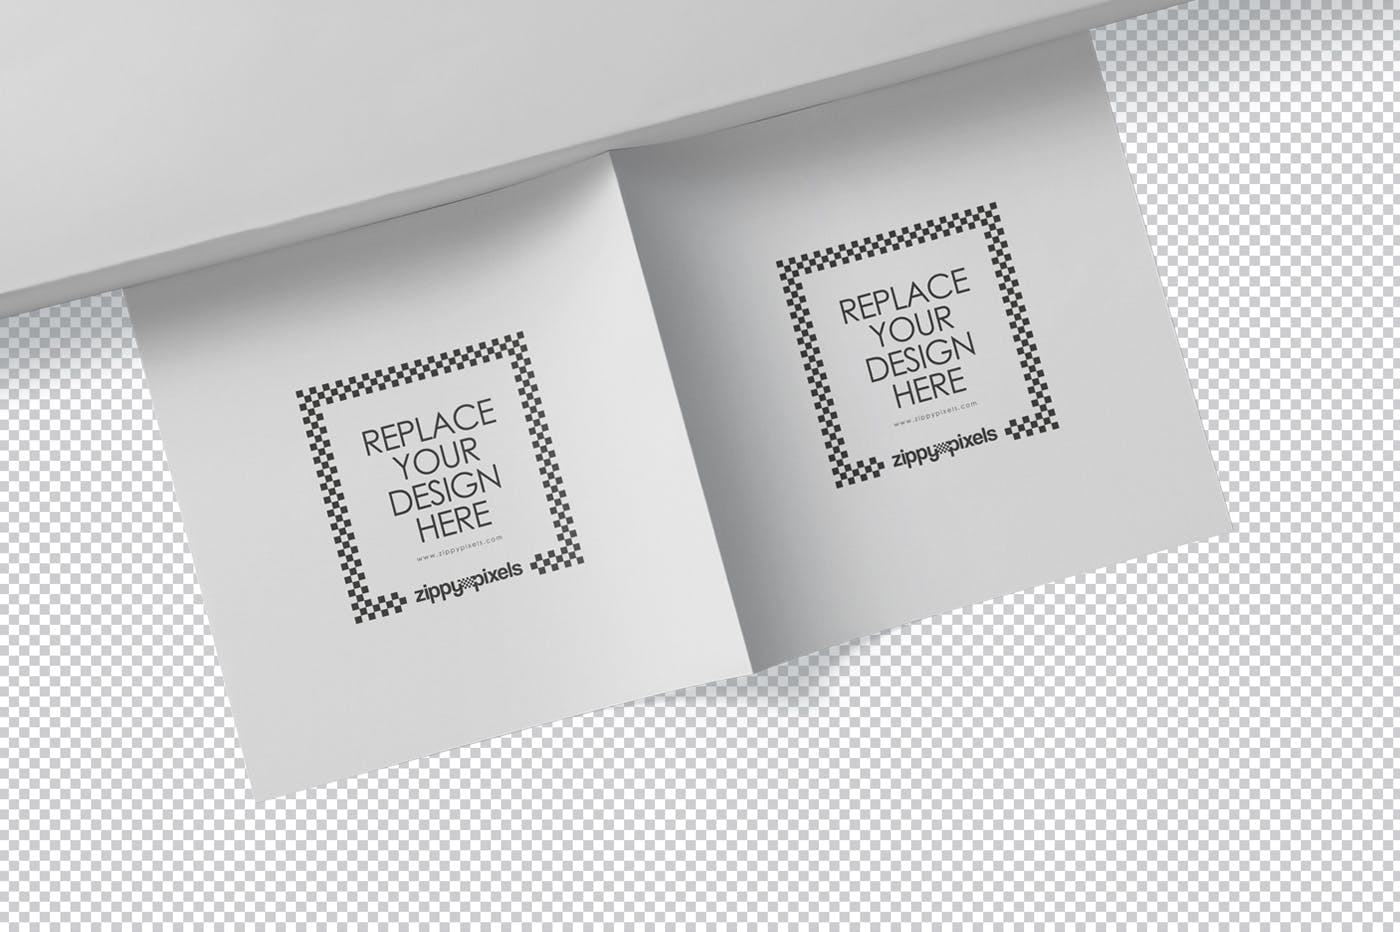 方形对折页宣传手册设计效果图样机蚂蚁素材精选 Square Bifold Brochure Mockups插图(6)